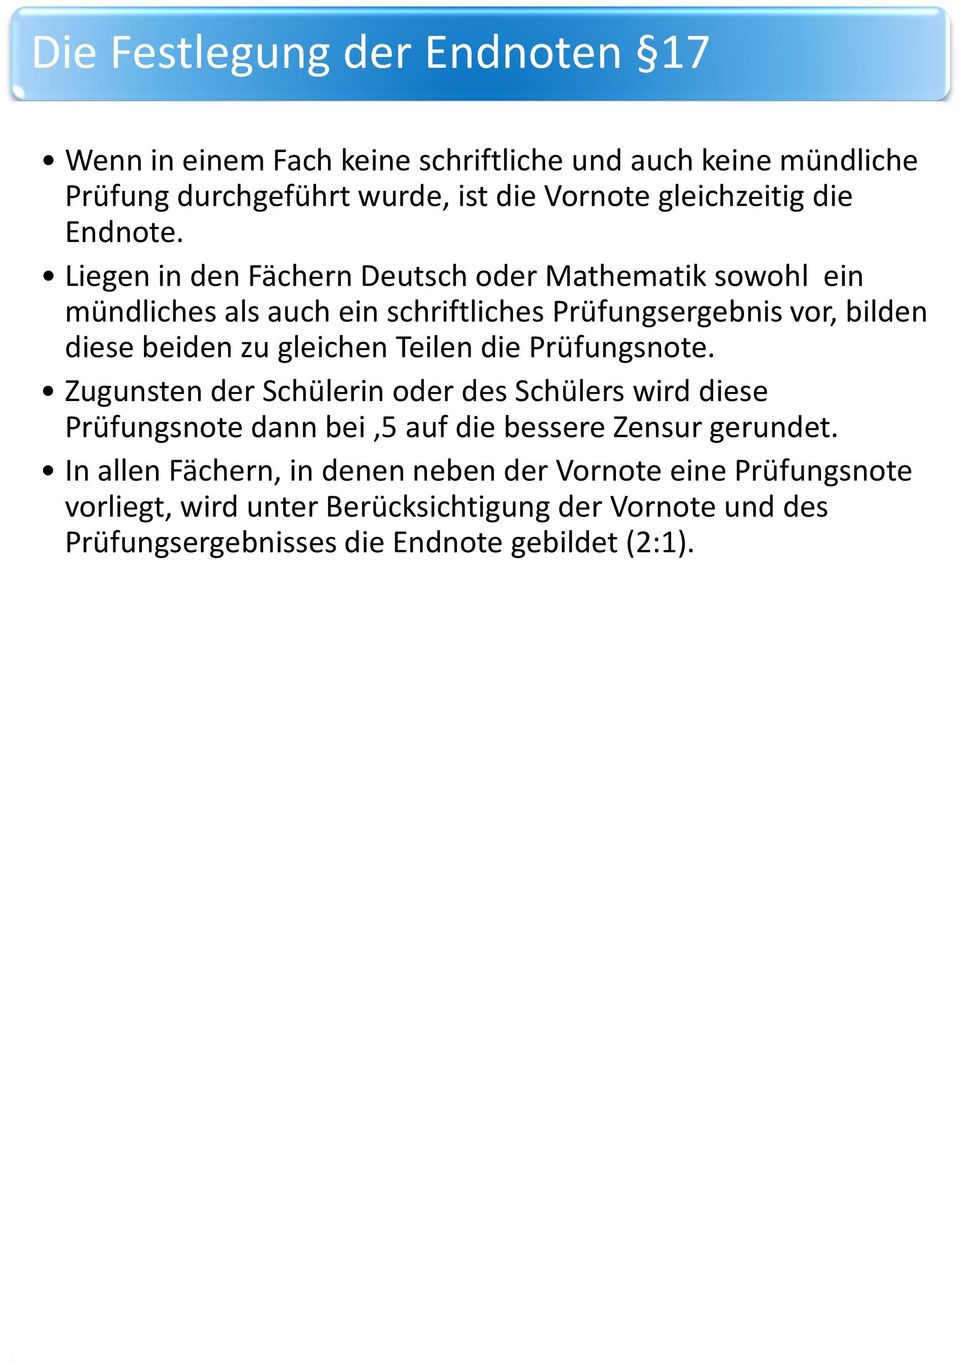 Liegen in den Fächern Deutsch oder Mathematik sowohl ein mündliches als auch ein schriftliches Prüfungsergebnis vor, bilden diese beiden zu gleichen Teilen